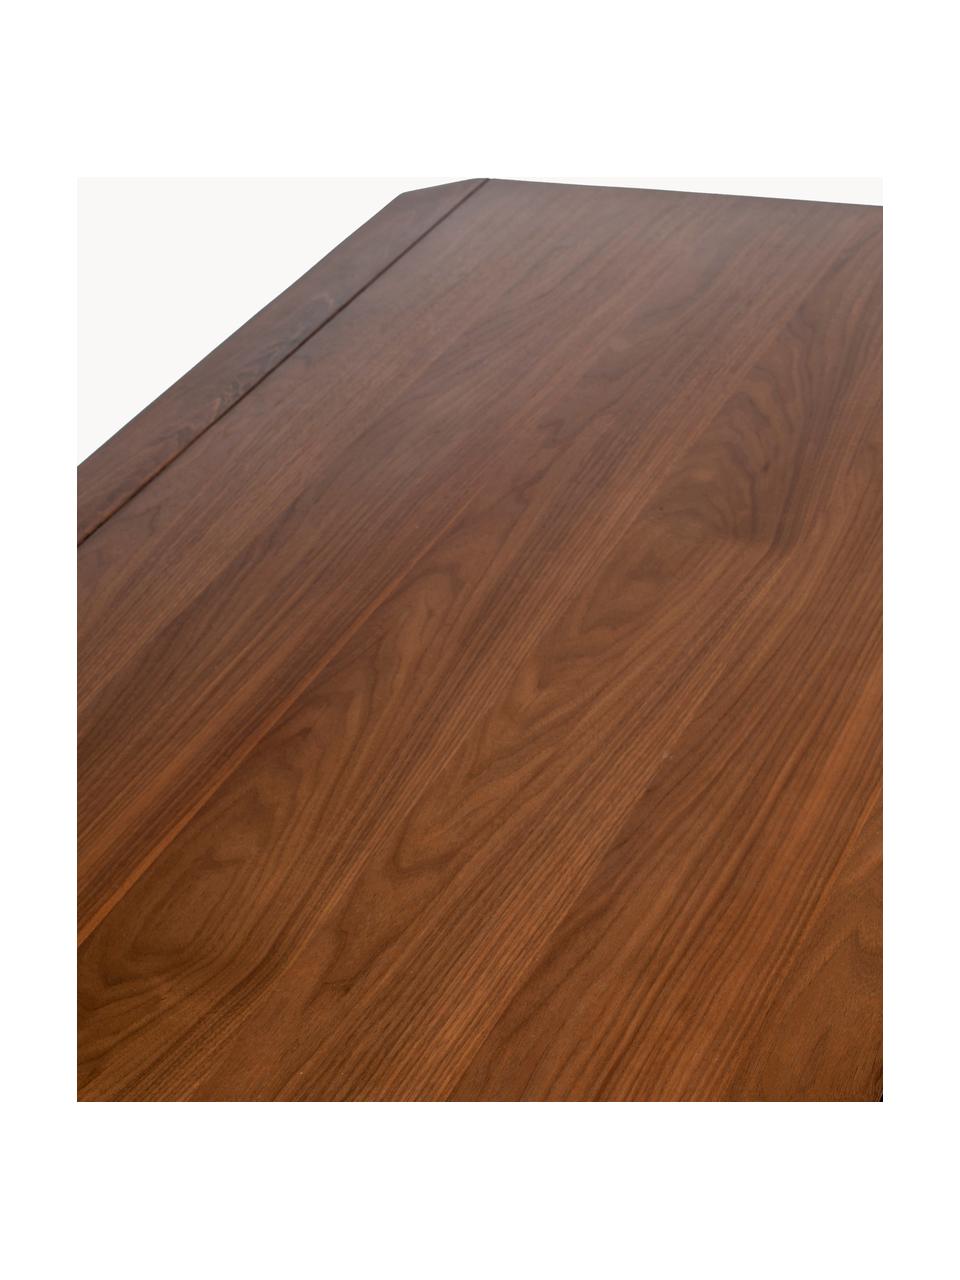 Jídelní stůl z jasanového dřeva Storm, různé velikosti, Jasanové dřevo, tmavě hnědě lakované, Š 220 cm, H 90 cm